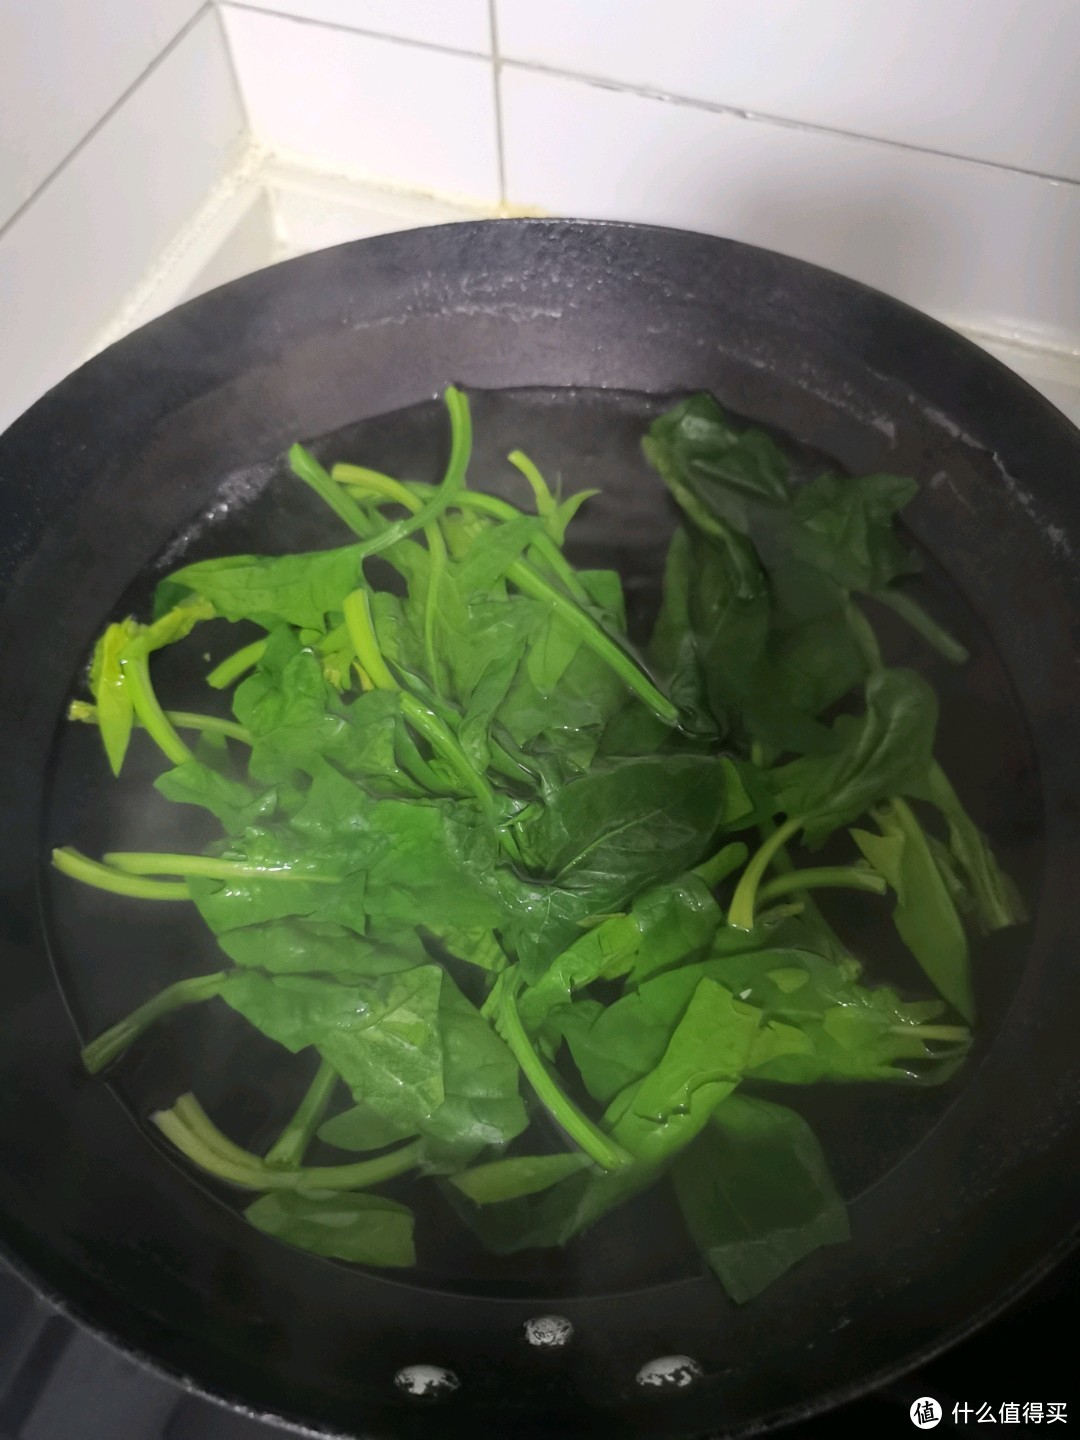 菠菜焯水变色捞出，浅绿色变成深绿色